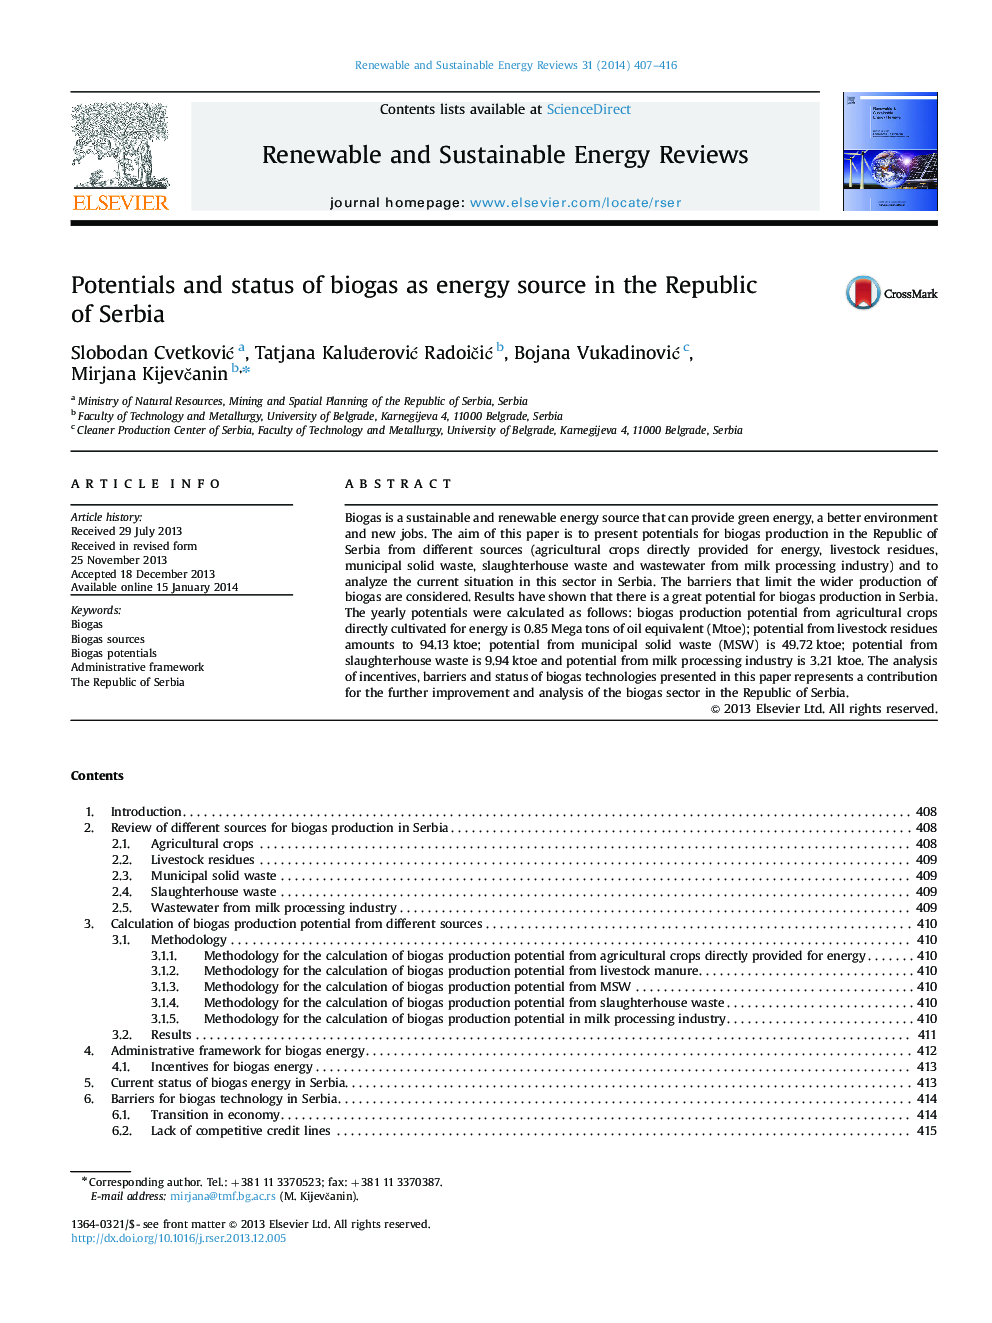 پتانسیل و وضعیت بیوگاز به عنوان منبع انرژی در جمهوری صربستان 